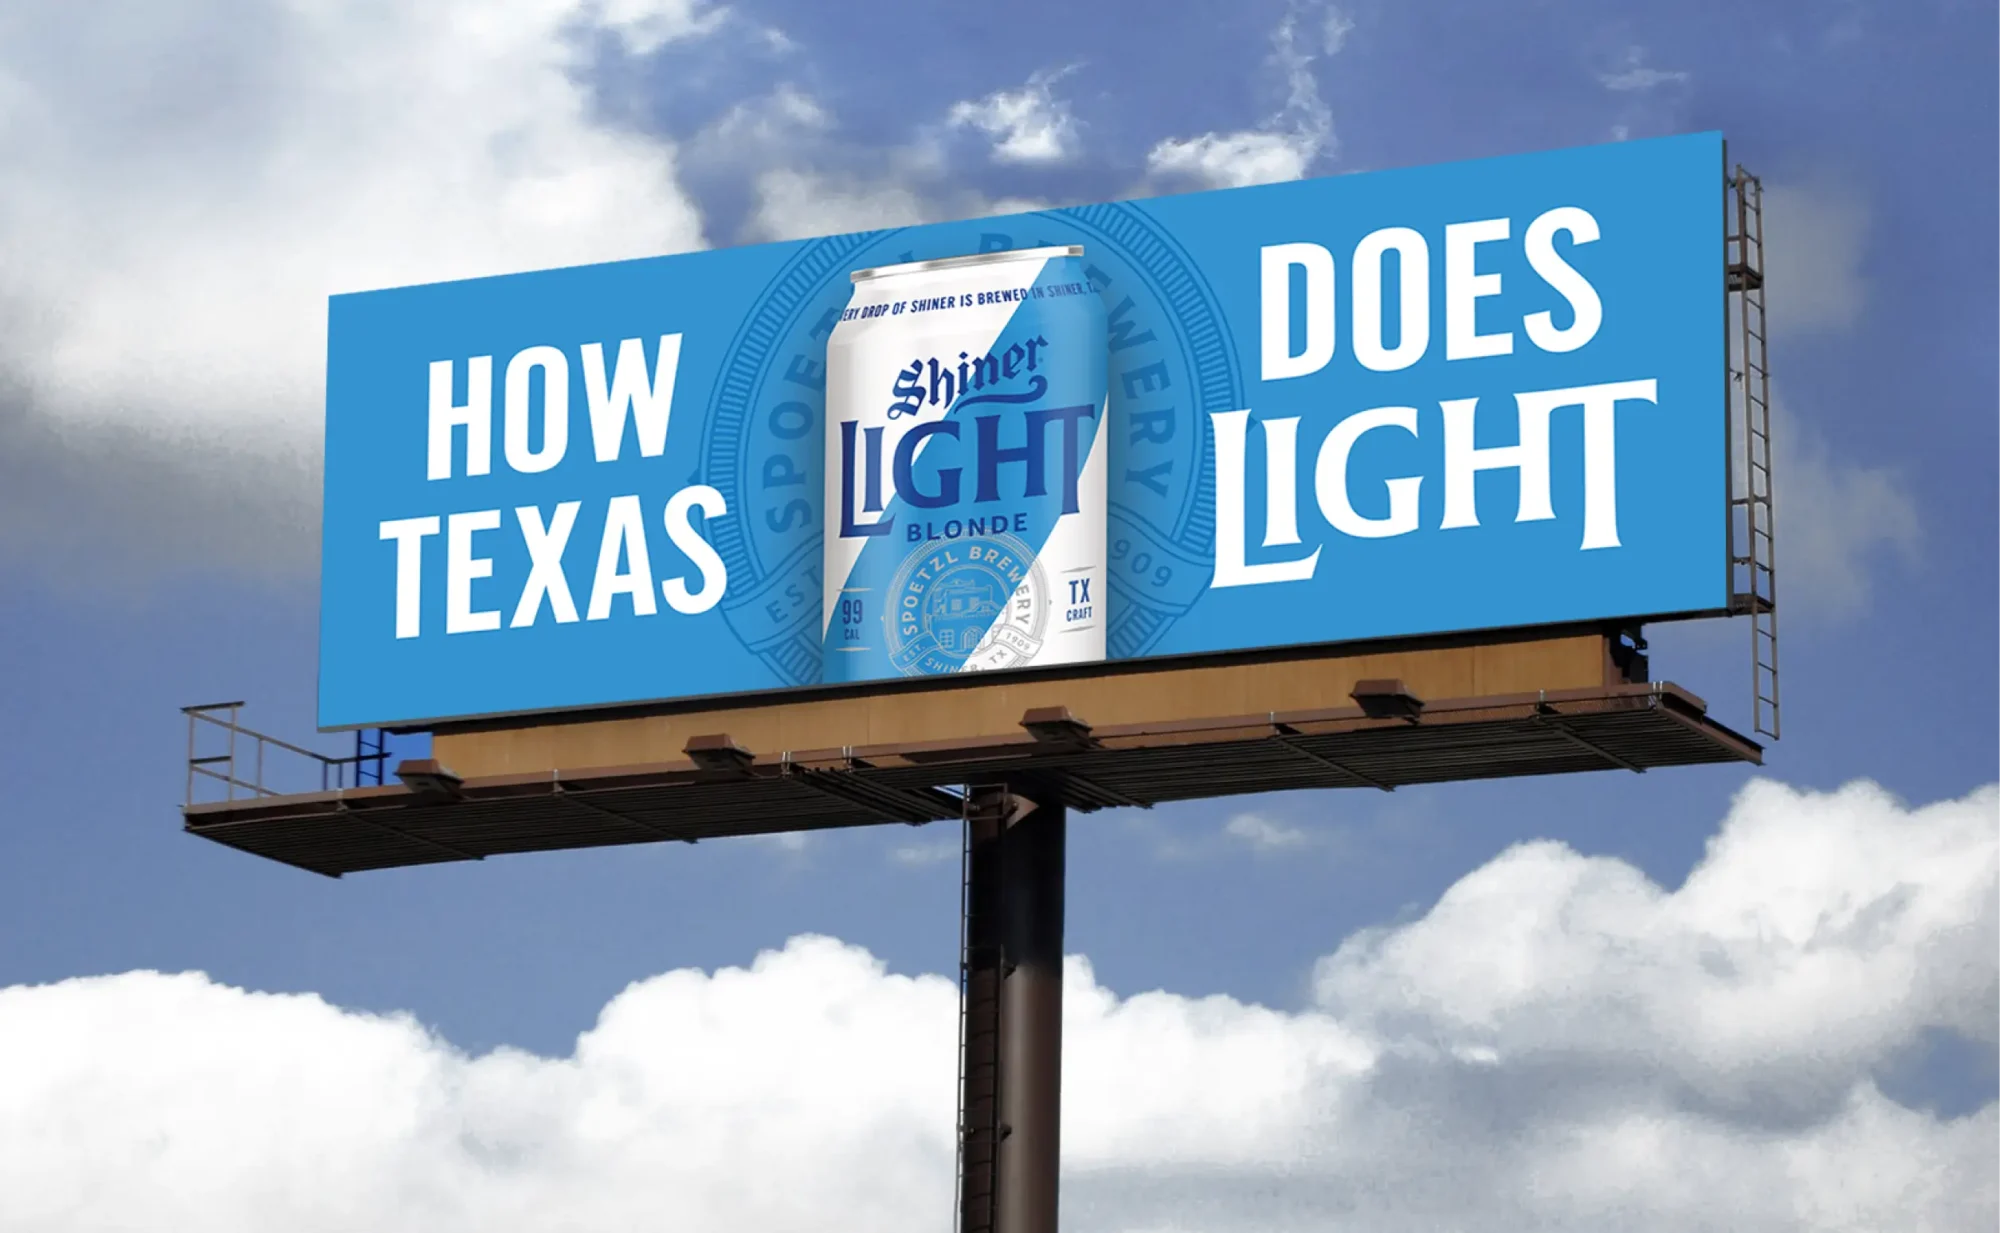 Big ad banner of a Shiner Light Blonde beer.